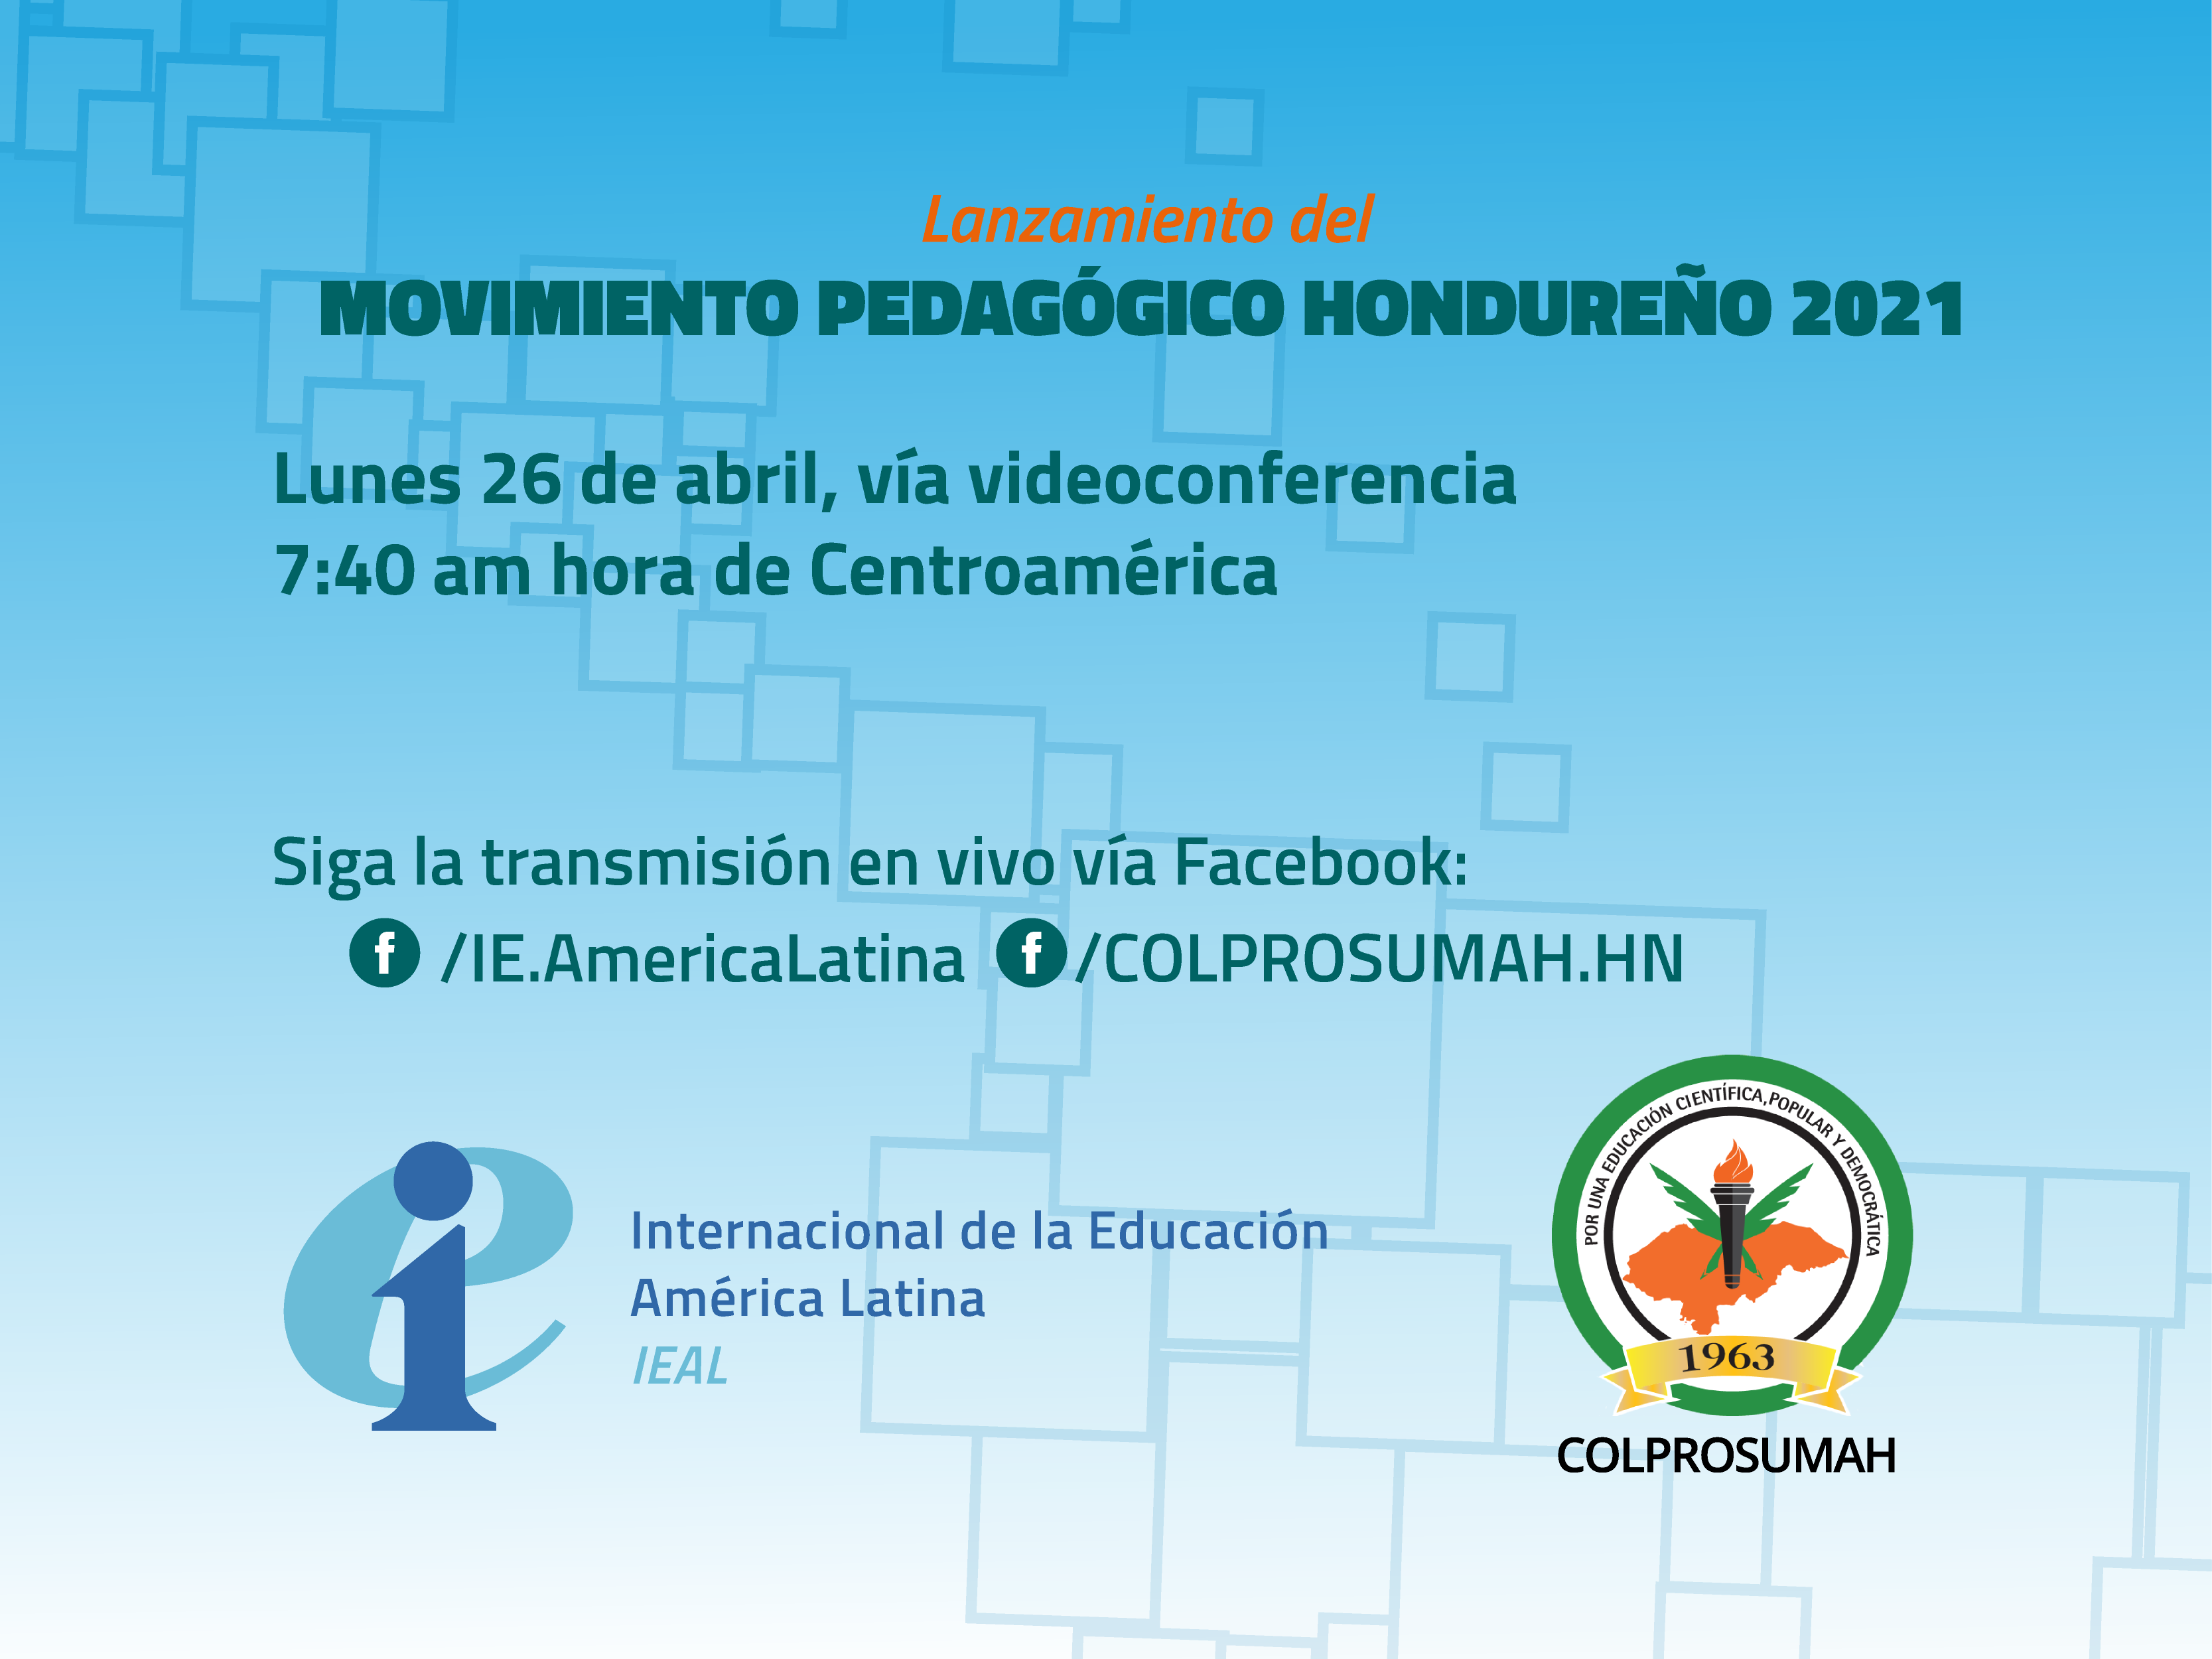 COLPROSUMAH inaugurará actividades del Movimiento Pedagógico Hondureño 2021 